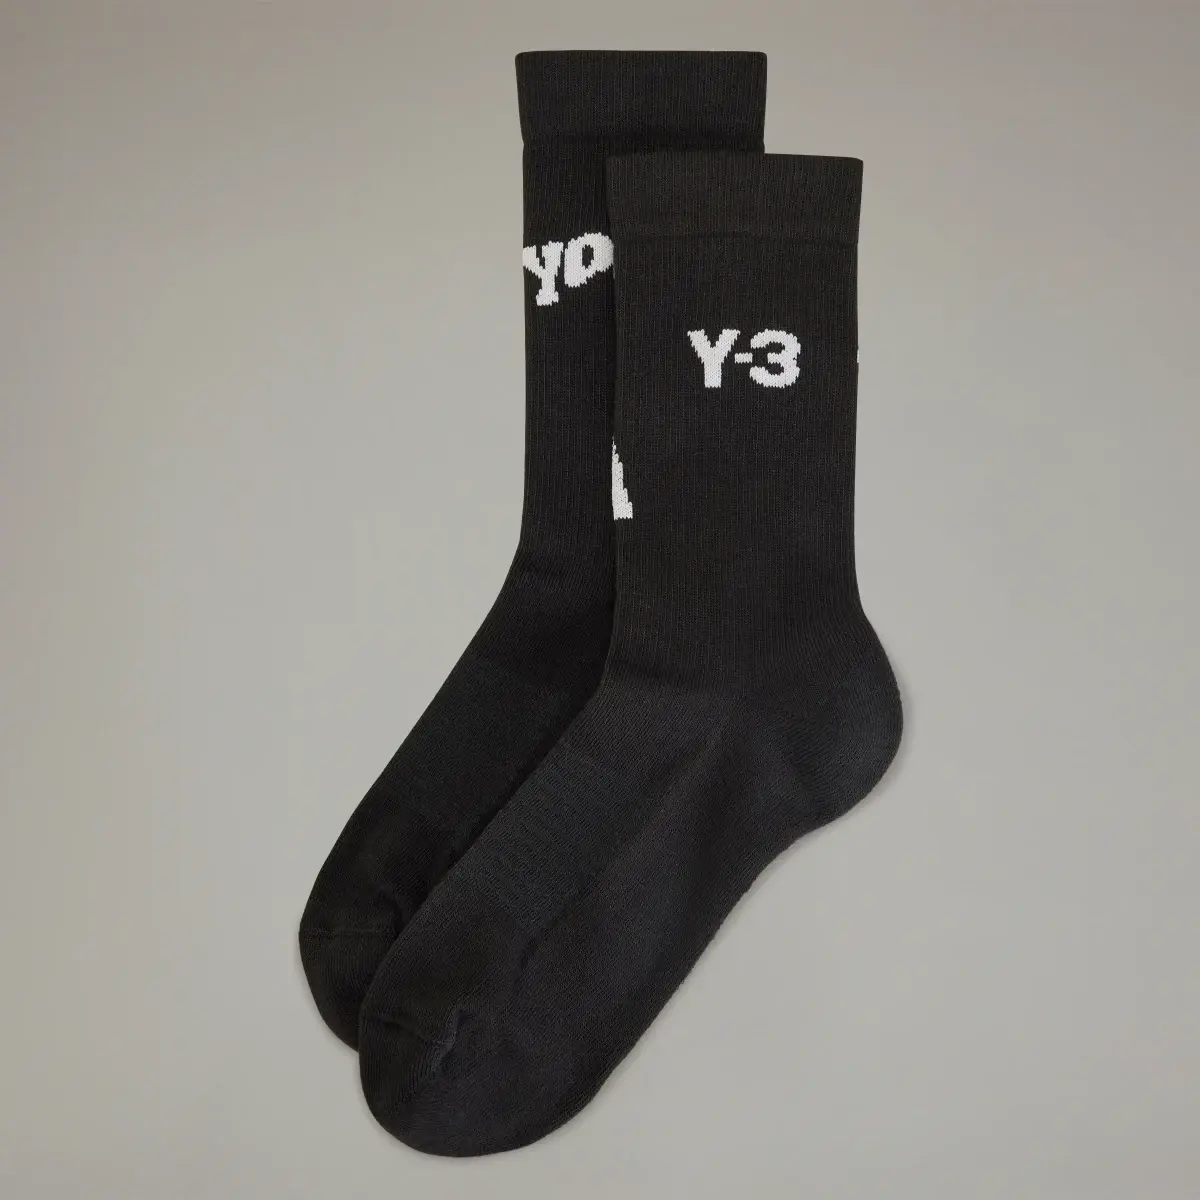 Adidas Y-3 Crew Socken. 2